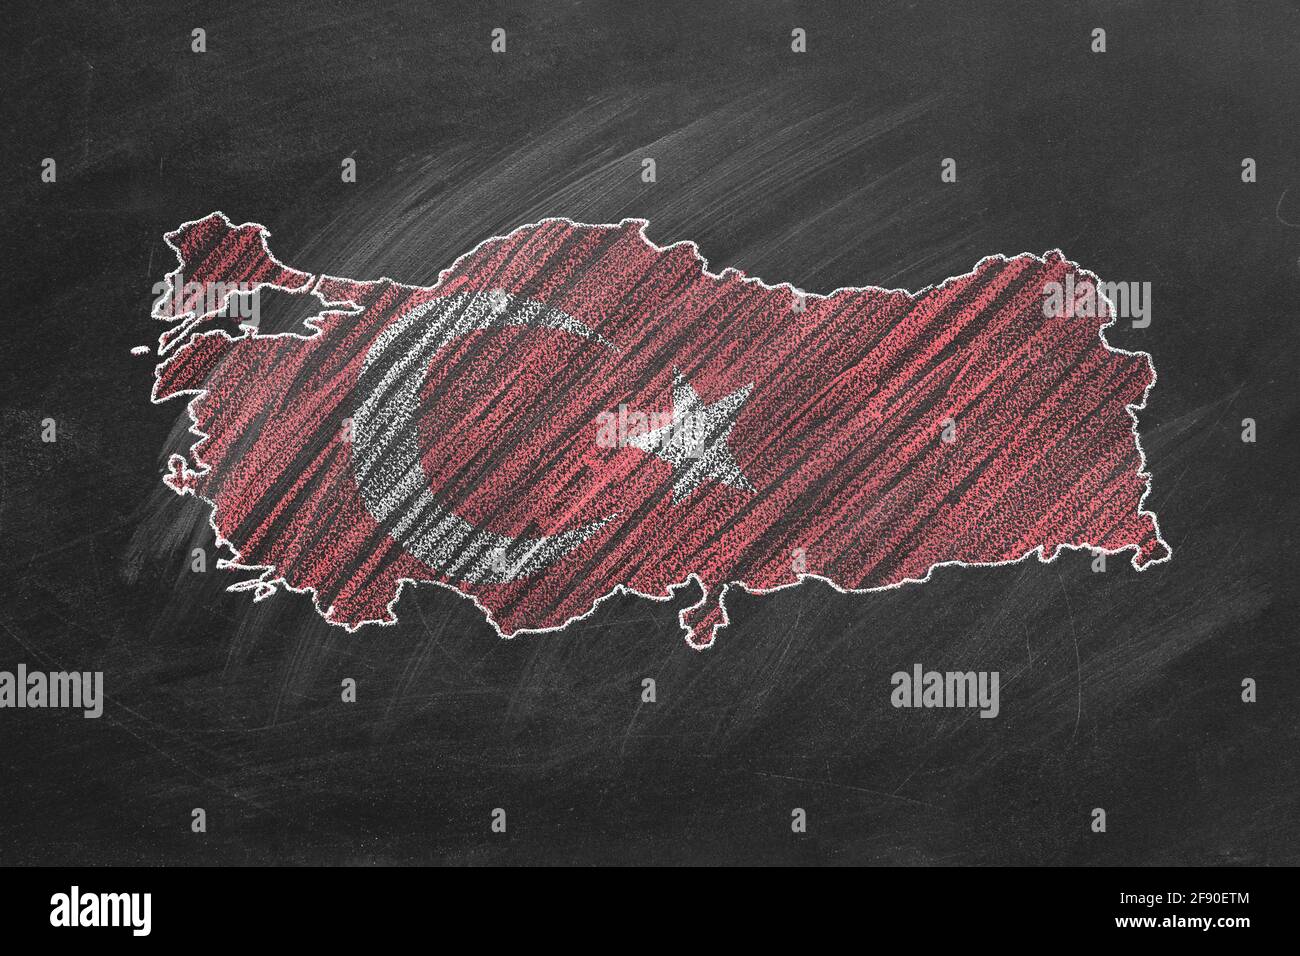 Landkarte und Flagge der Türkei Zeichnung mit Kreide auf der Tafel. Eine von einer großen Reihe von Karten und Flaggen verschiedener Länder. Bildung, Reisen, Stockfoto